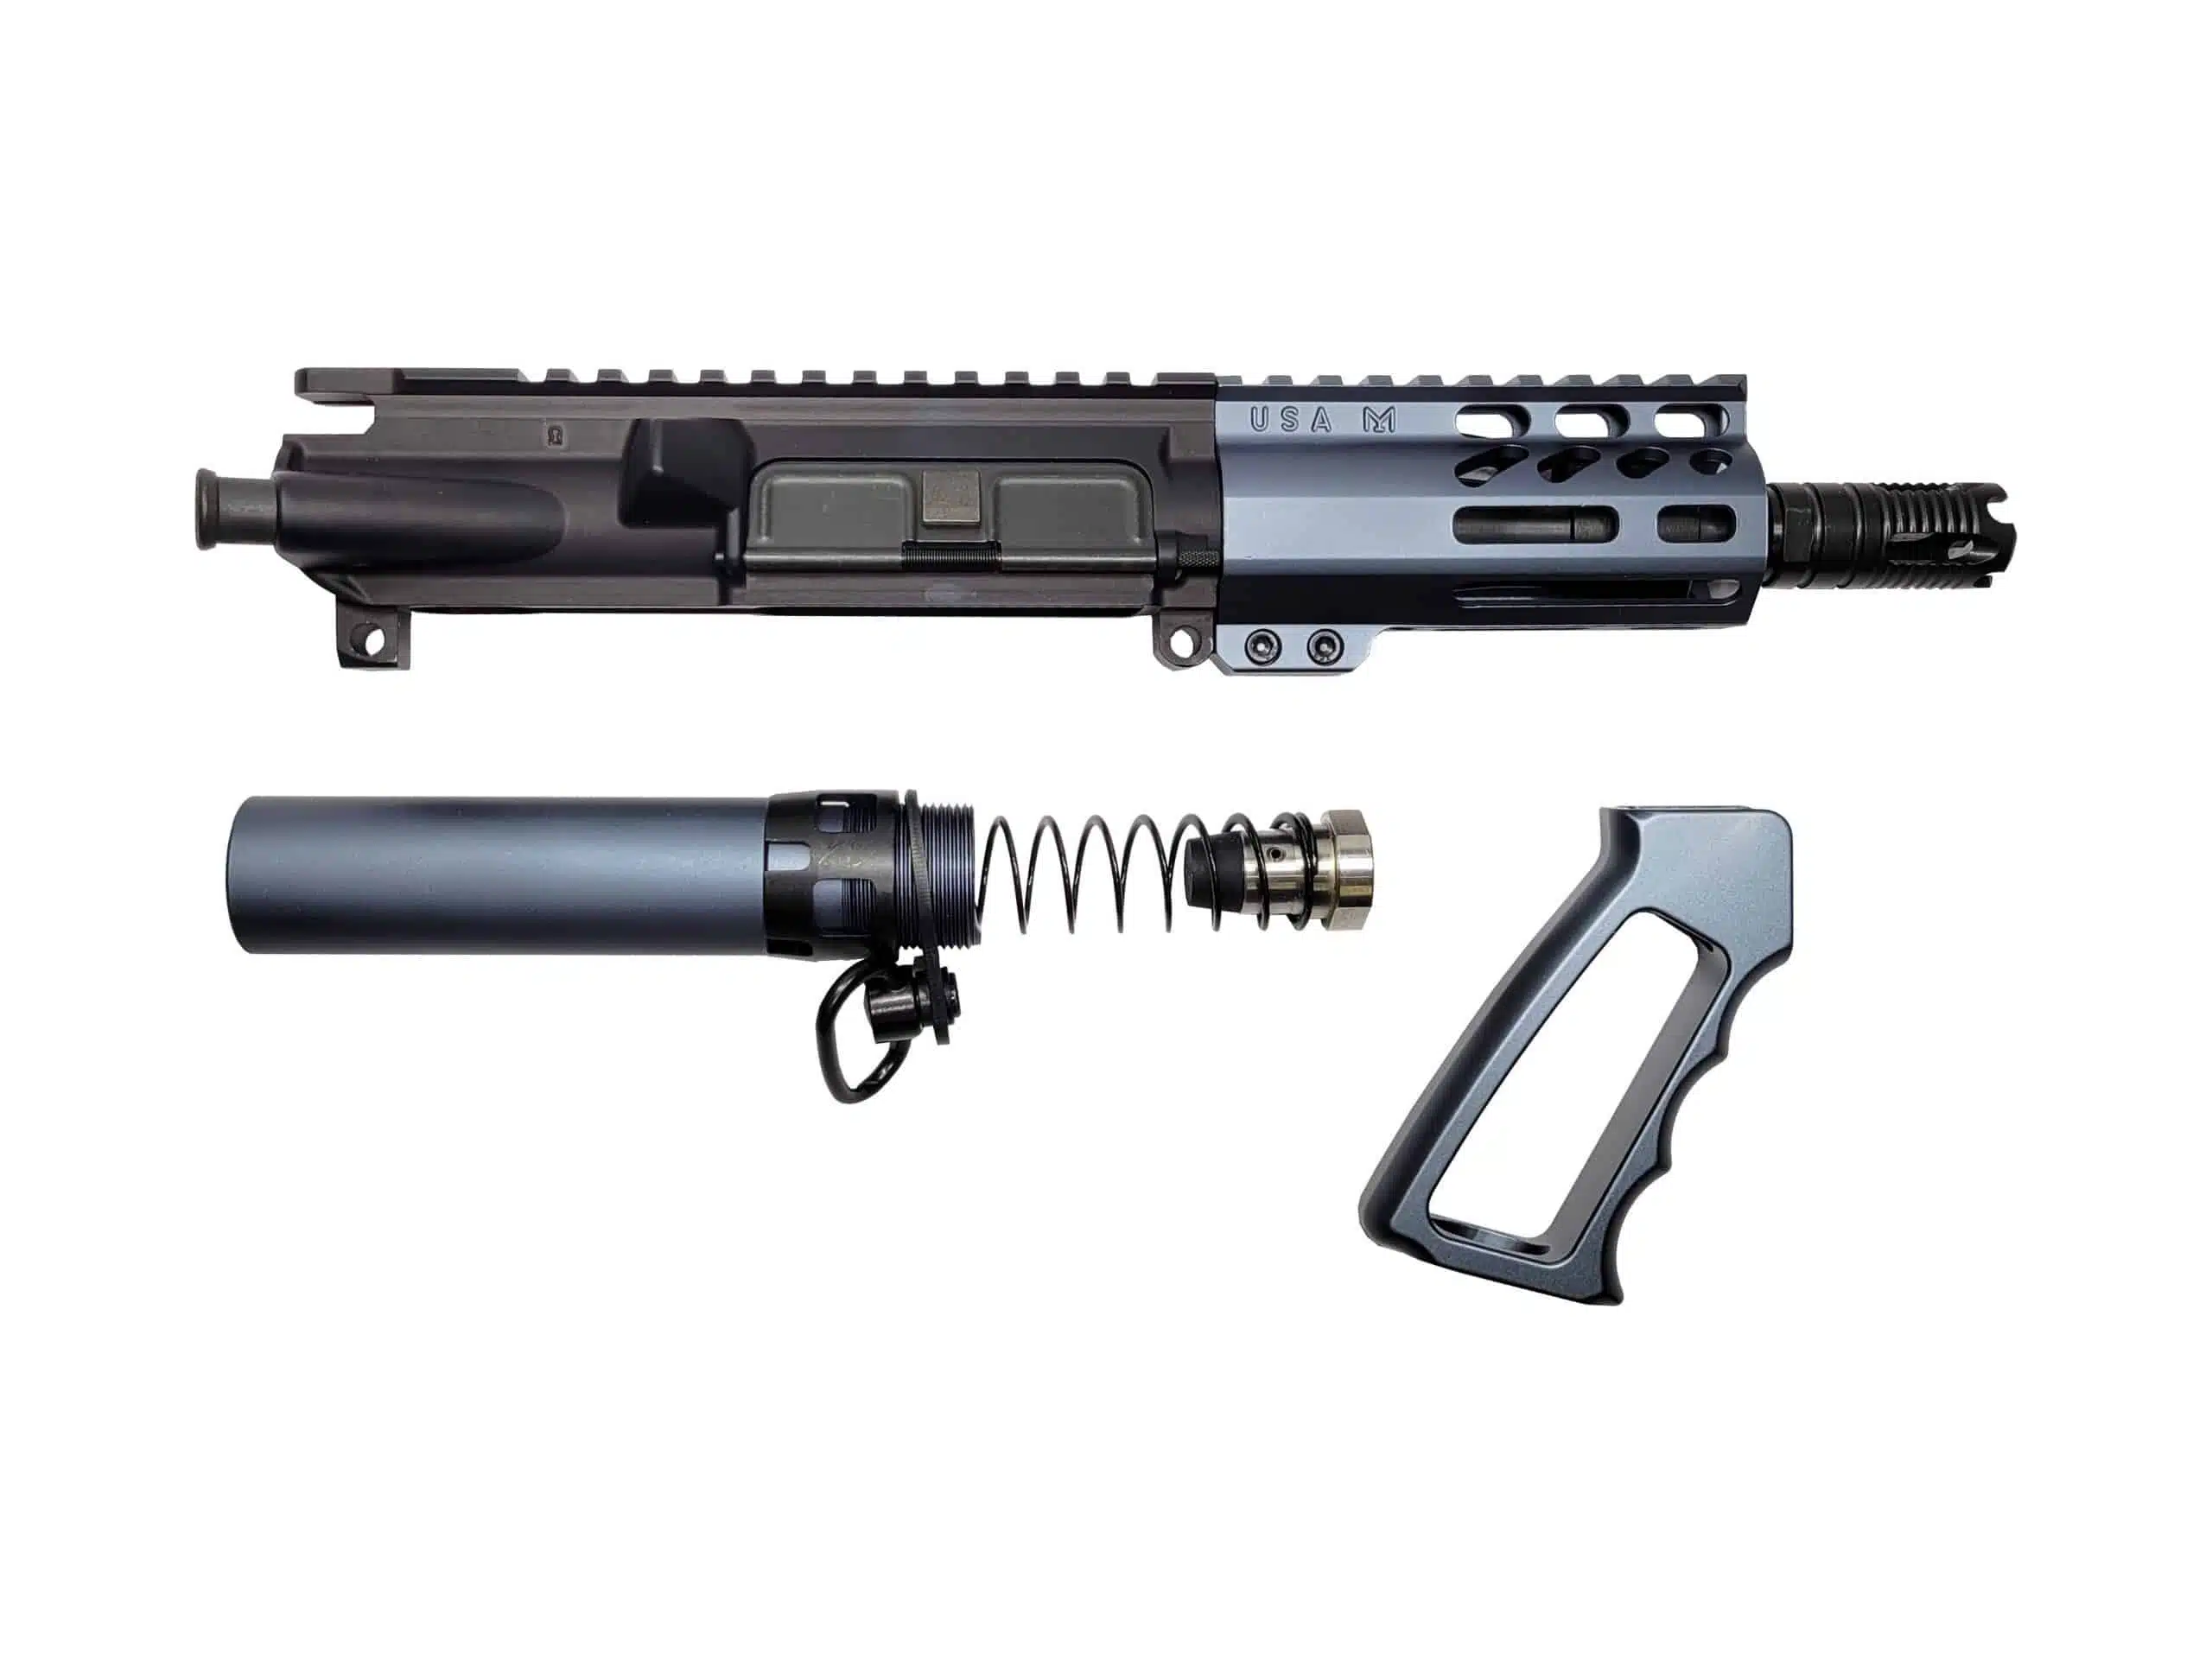 AR-15 Upper Platforms for Law Enforcement